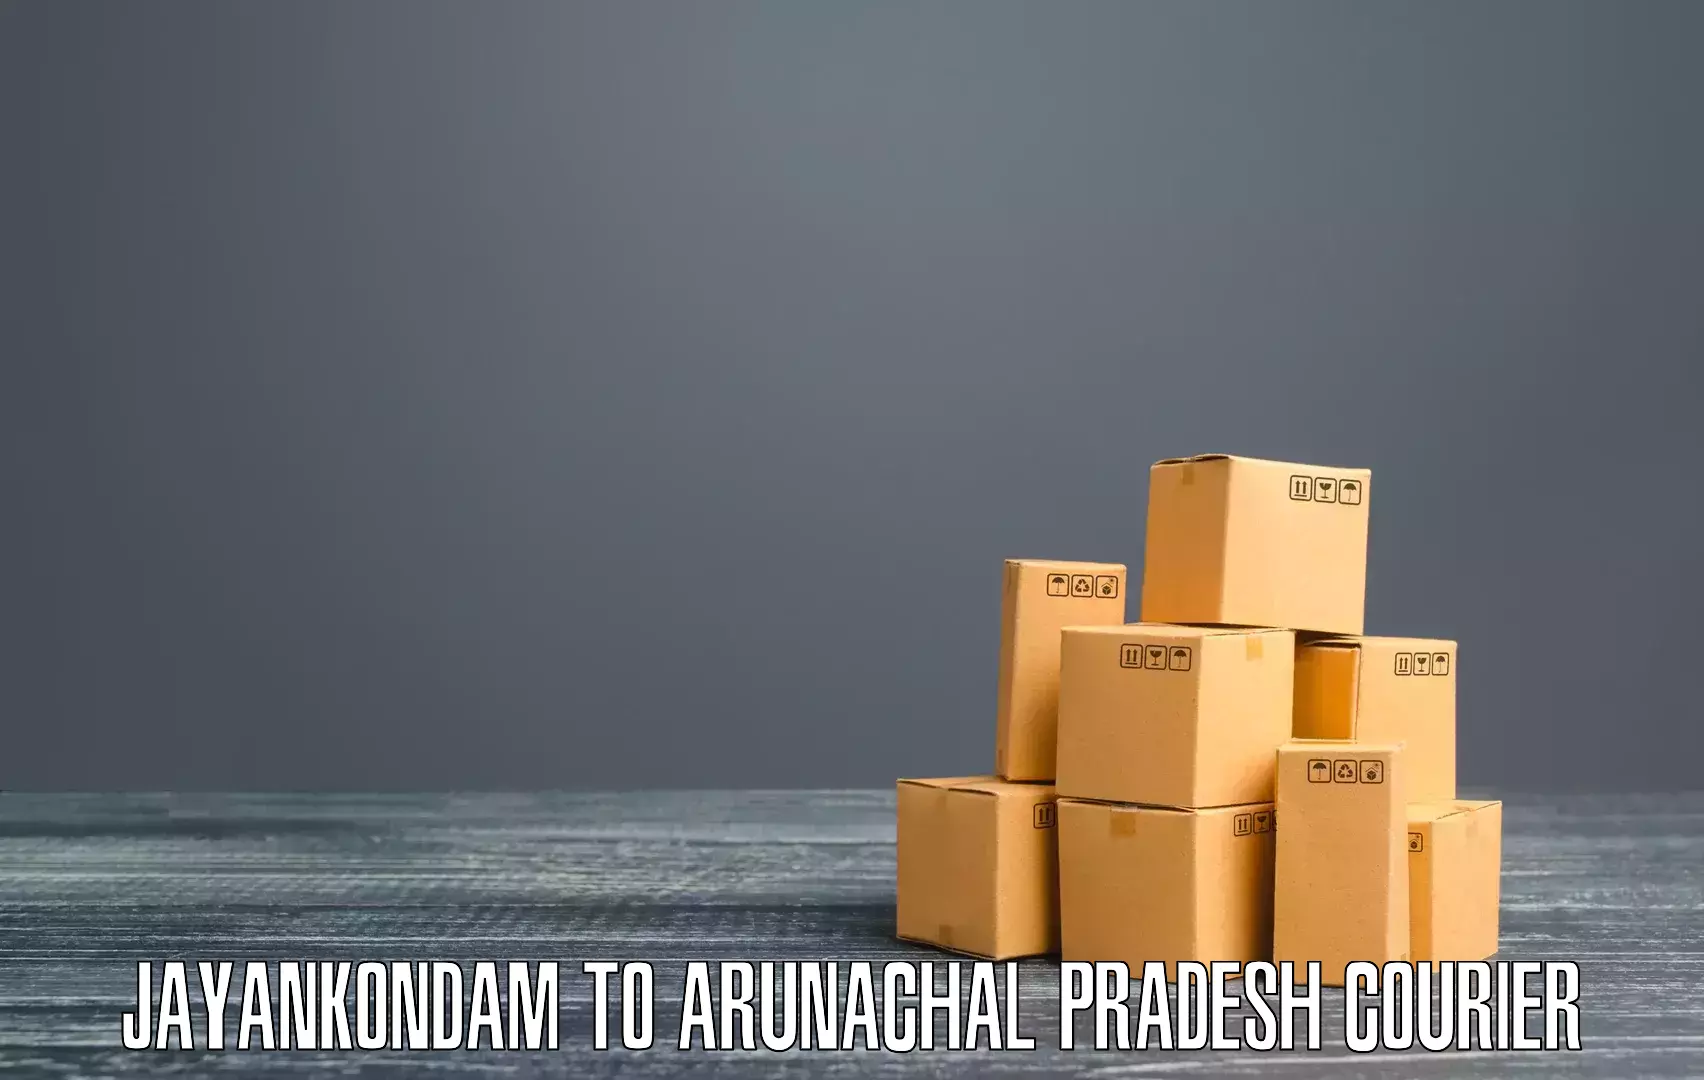 Courier service comparison Jayankondam to Arunachal Pradesh